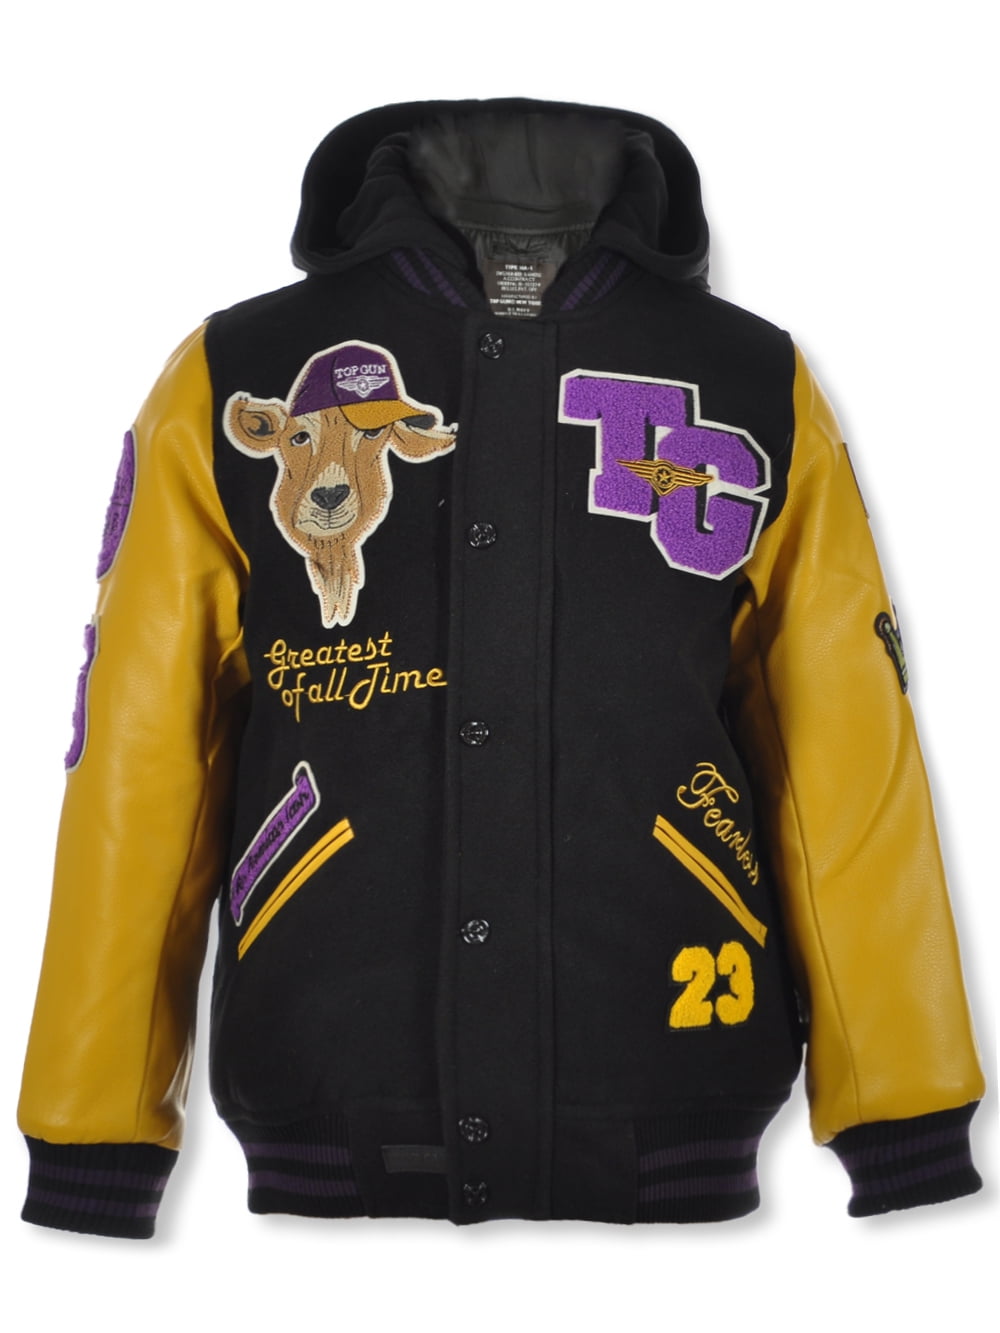 Top Gun Boys' GOAT Varsity Jacket - yellow/purple, 18 (Big Boys)